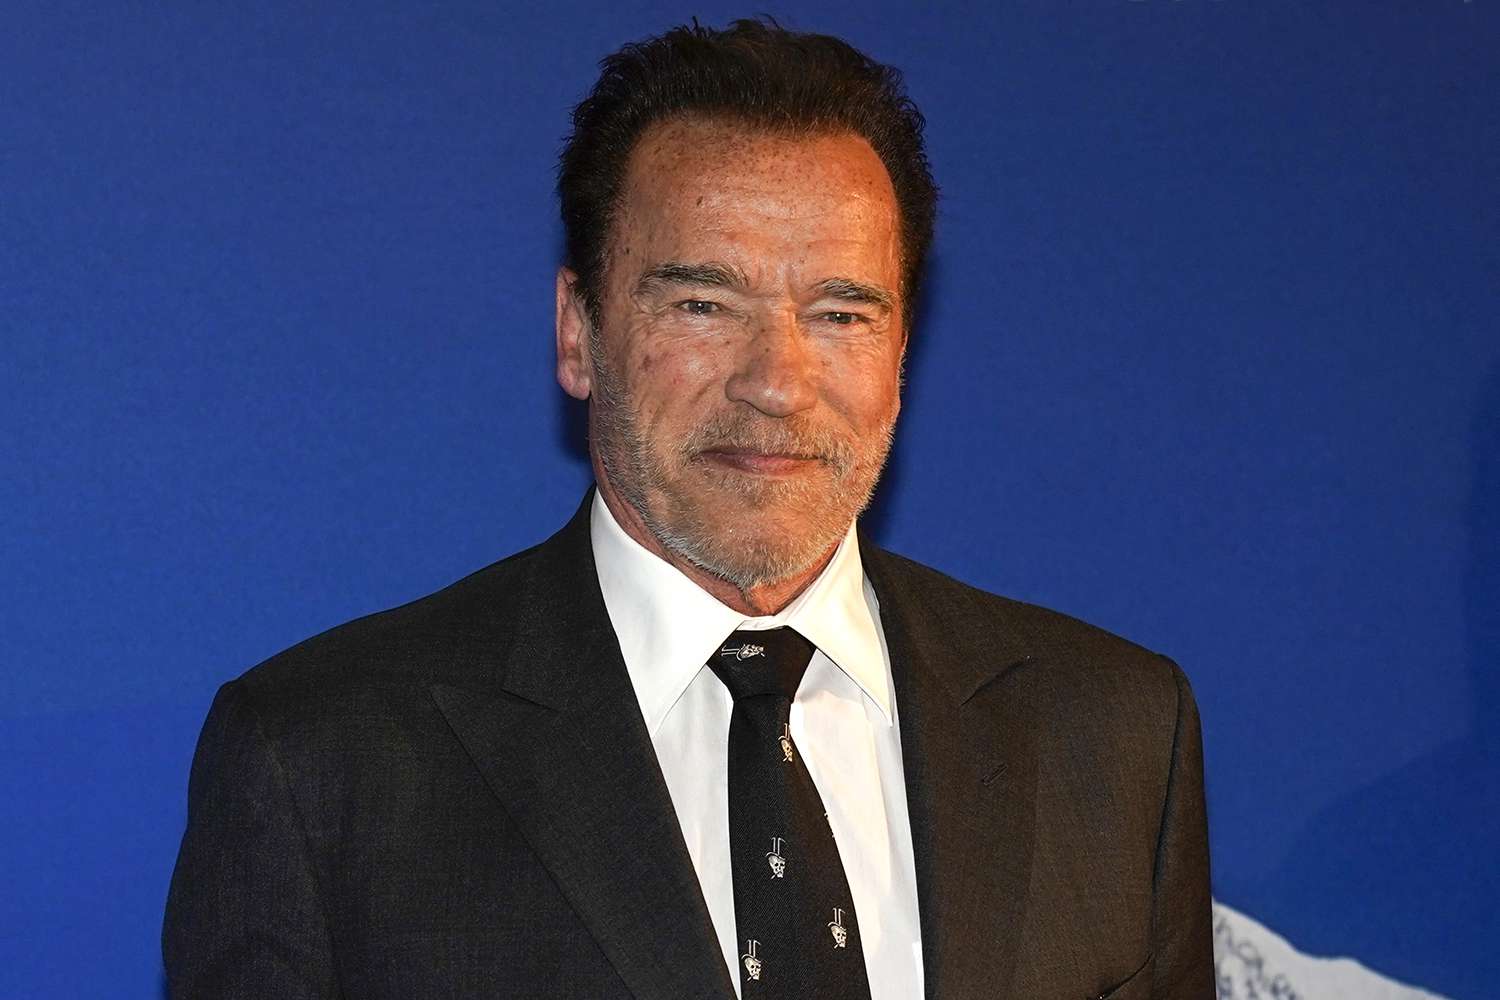 Arnold Schwarzenegger wearing a black suit